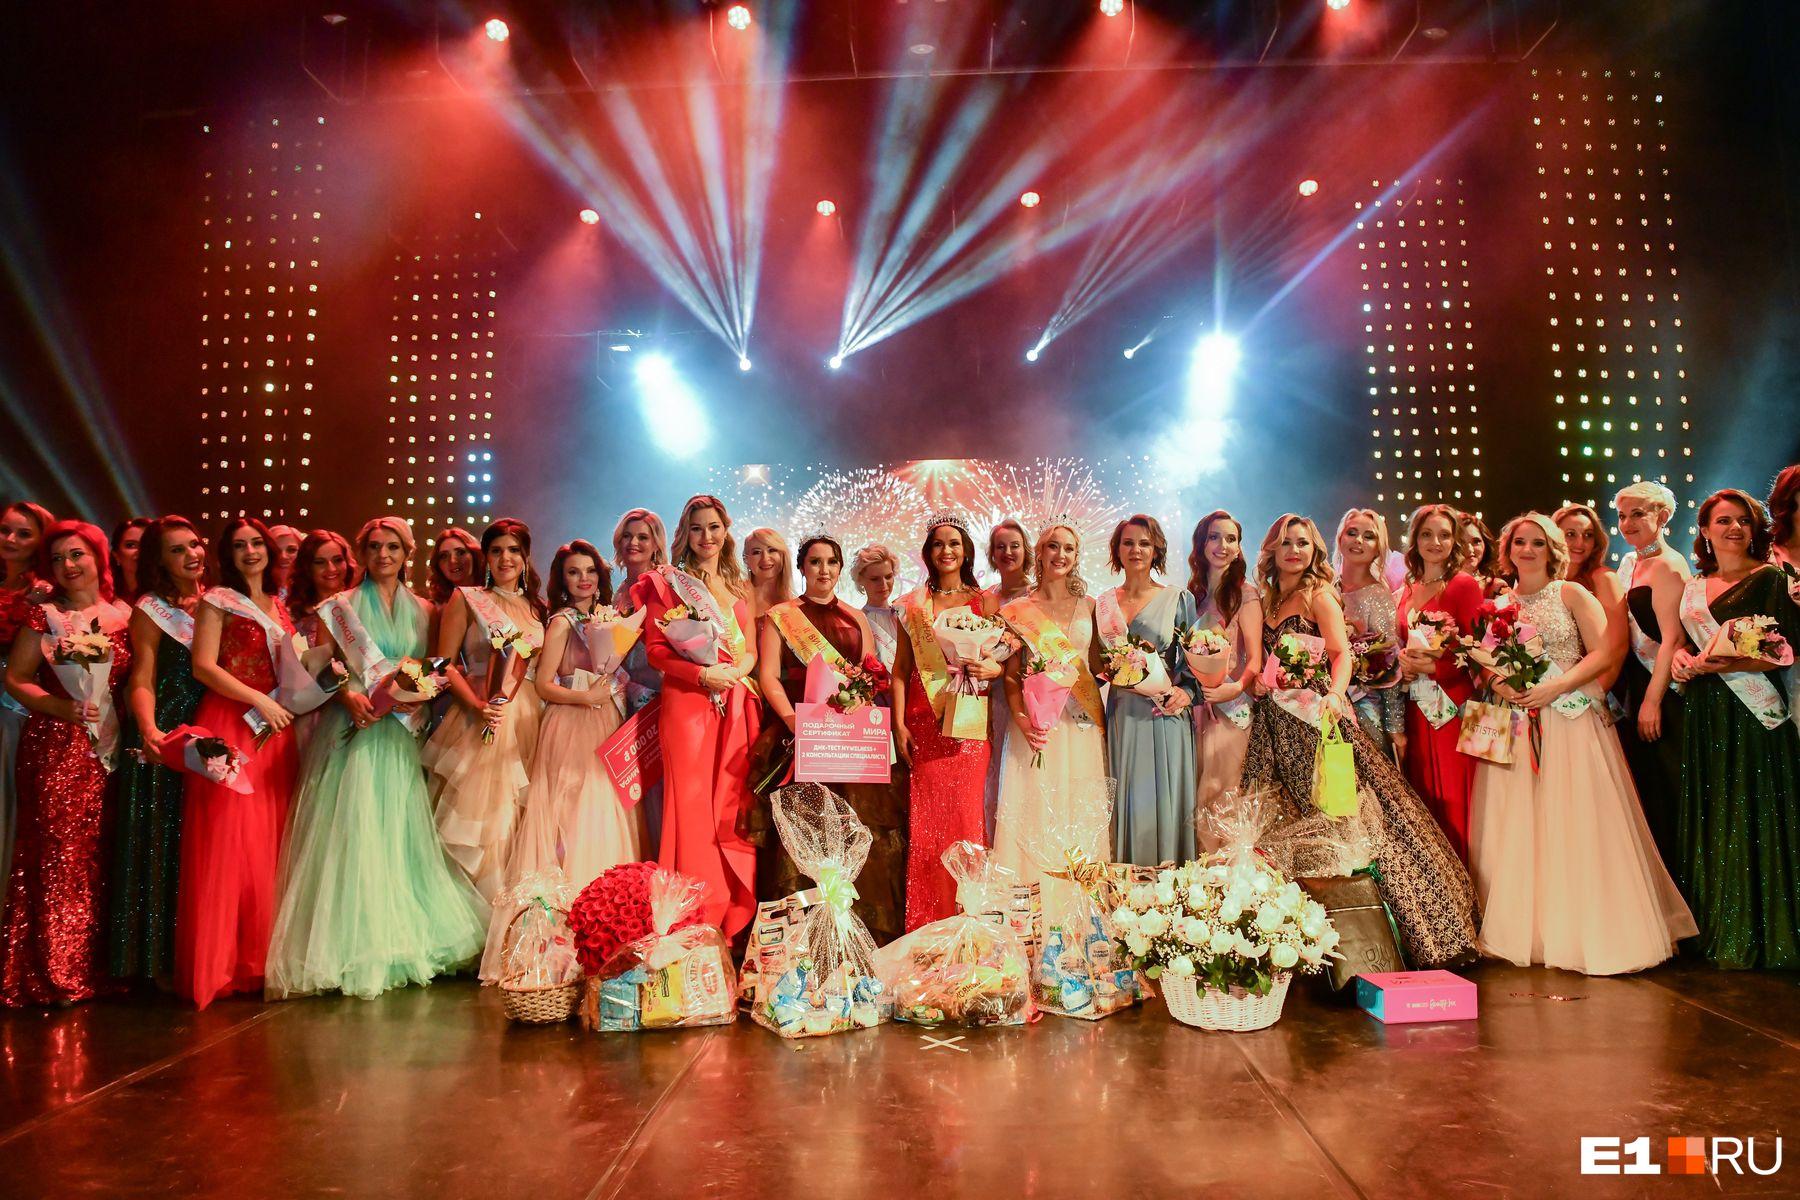 38 участниц боролись за звание главной мамы Екатеринбурга